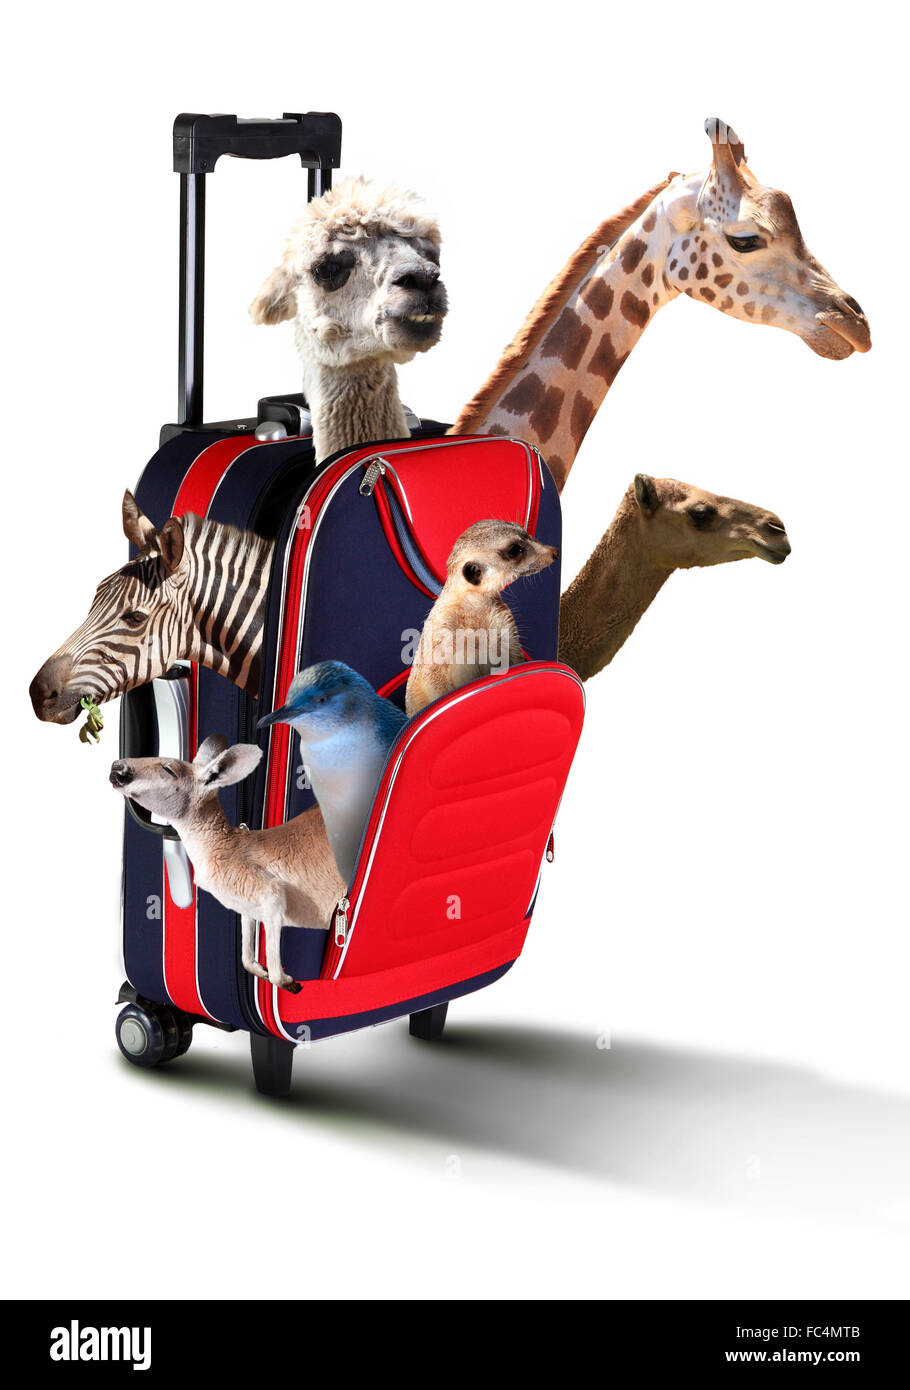 La maleta roja con una colección de diferentes animales exóticos dentro Foto de stock